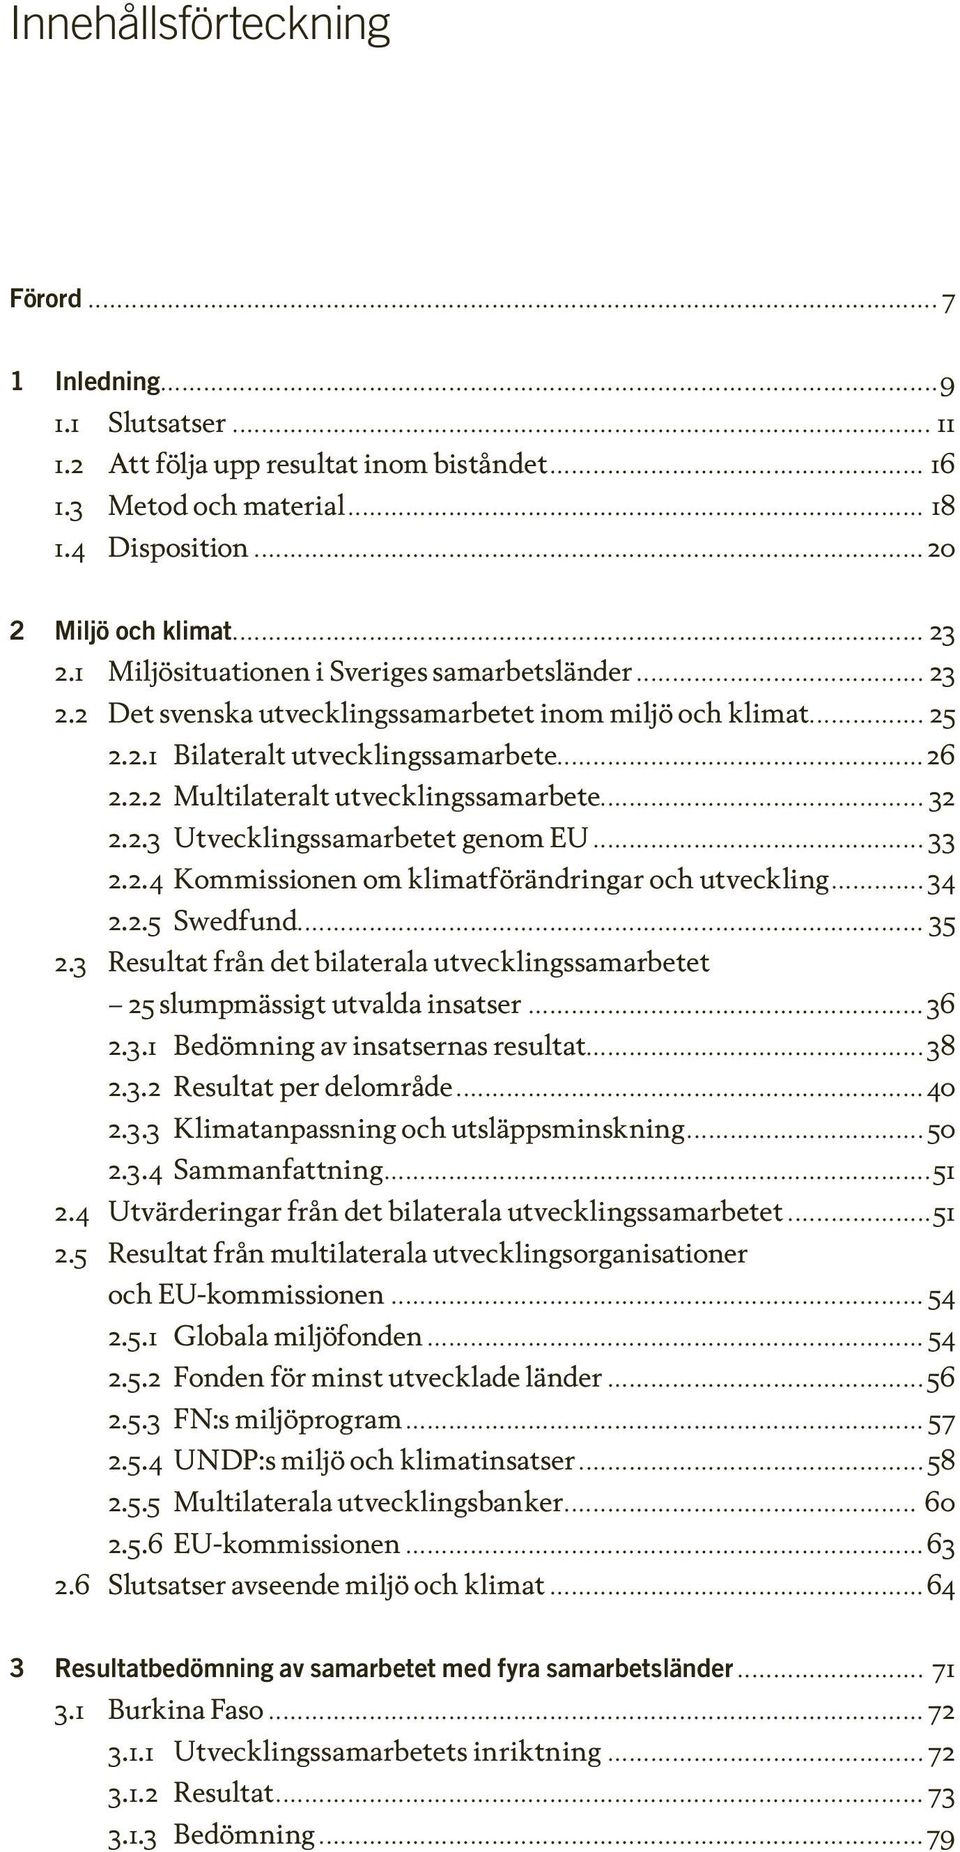 ..32 2.2.3 Utvecklingssamarbetet genom EU...33 2.2.4 Kommissionen om klimatförändringar och utveckling...34 2.2.5 Swedfund...35 2.